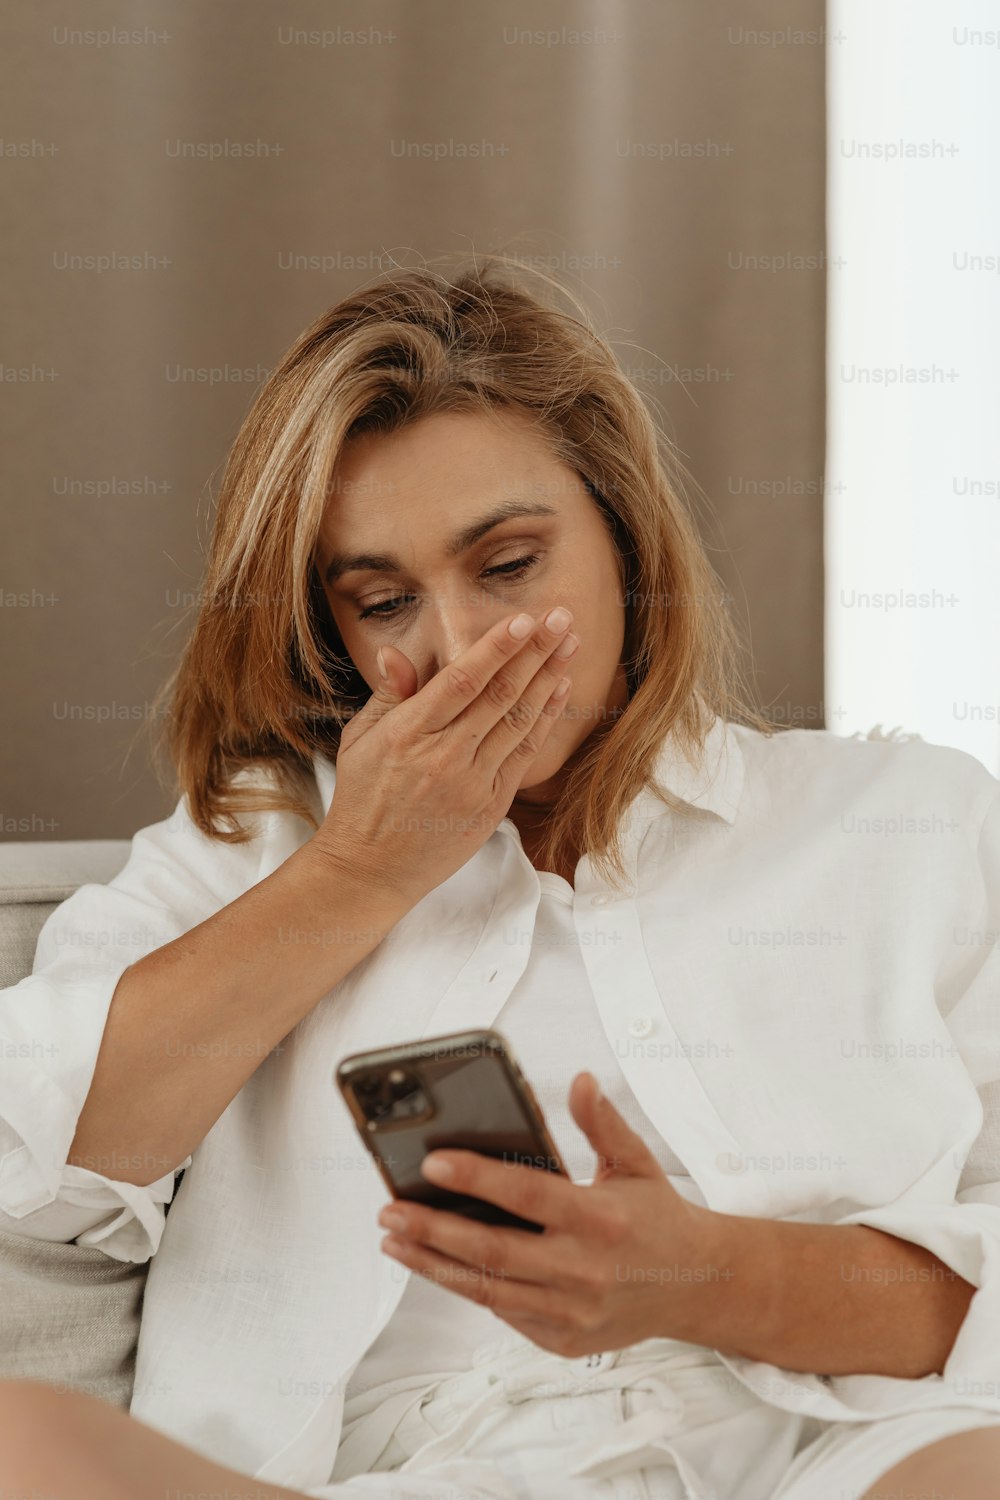 Una mujer sentada en un sofá mirando un teléfono celular